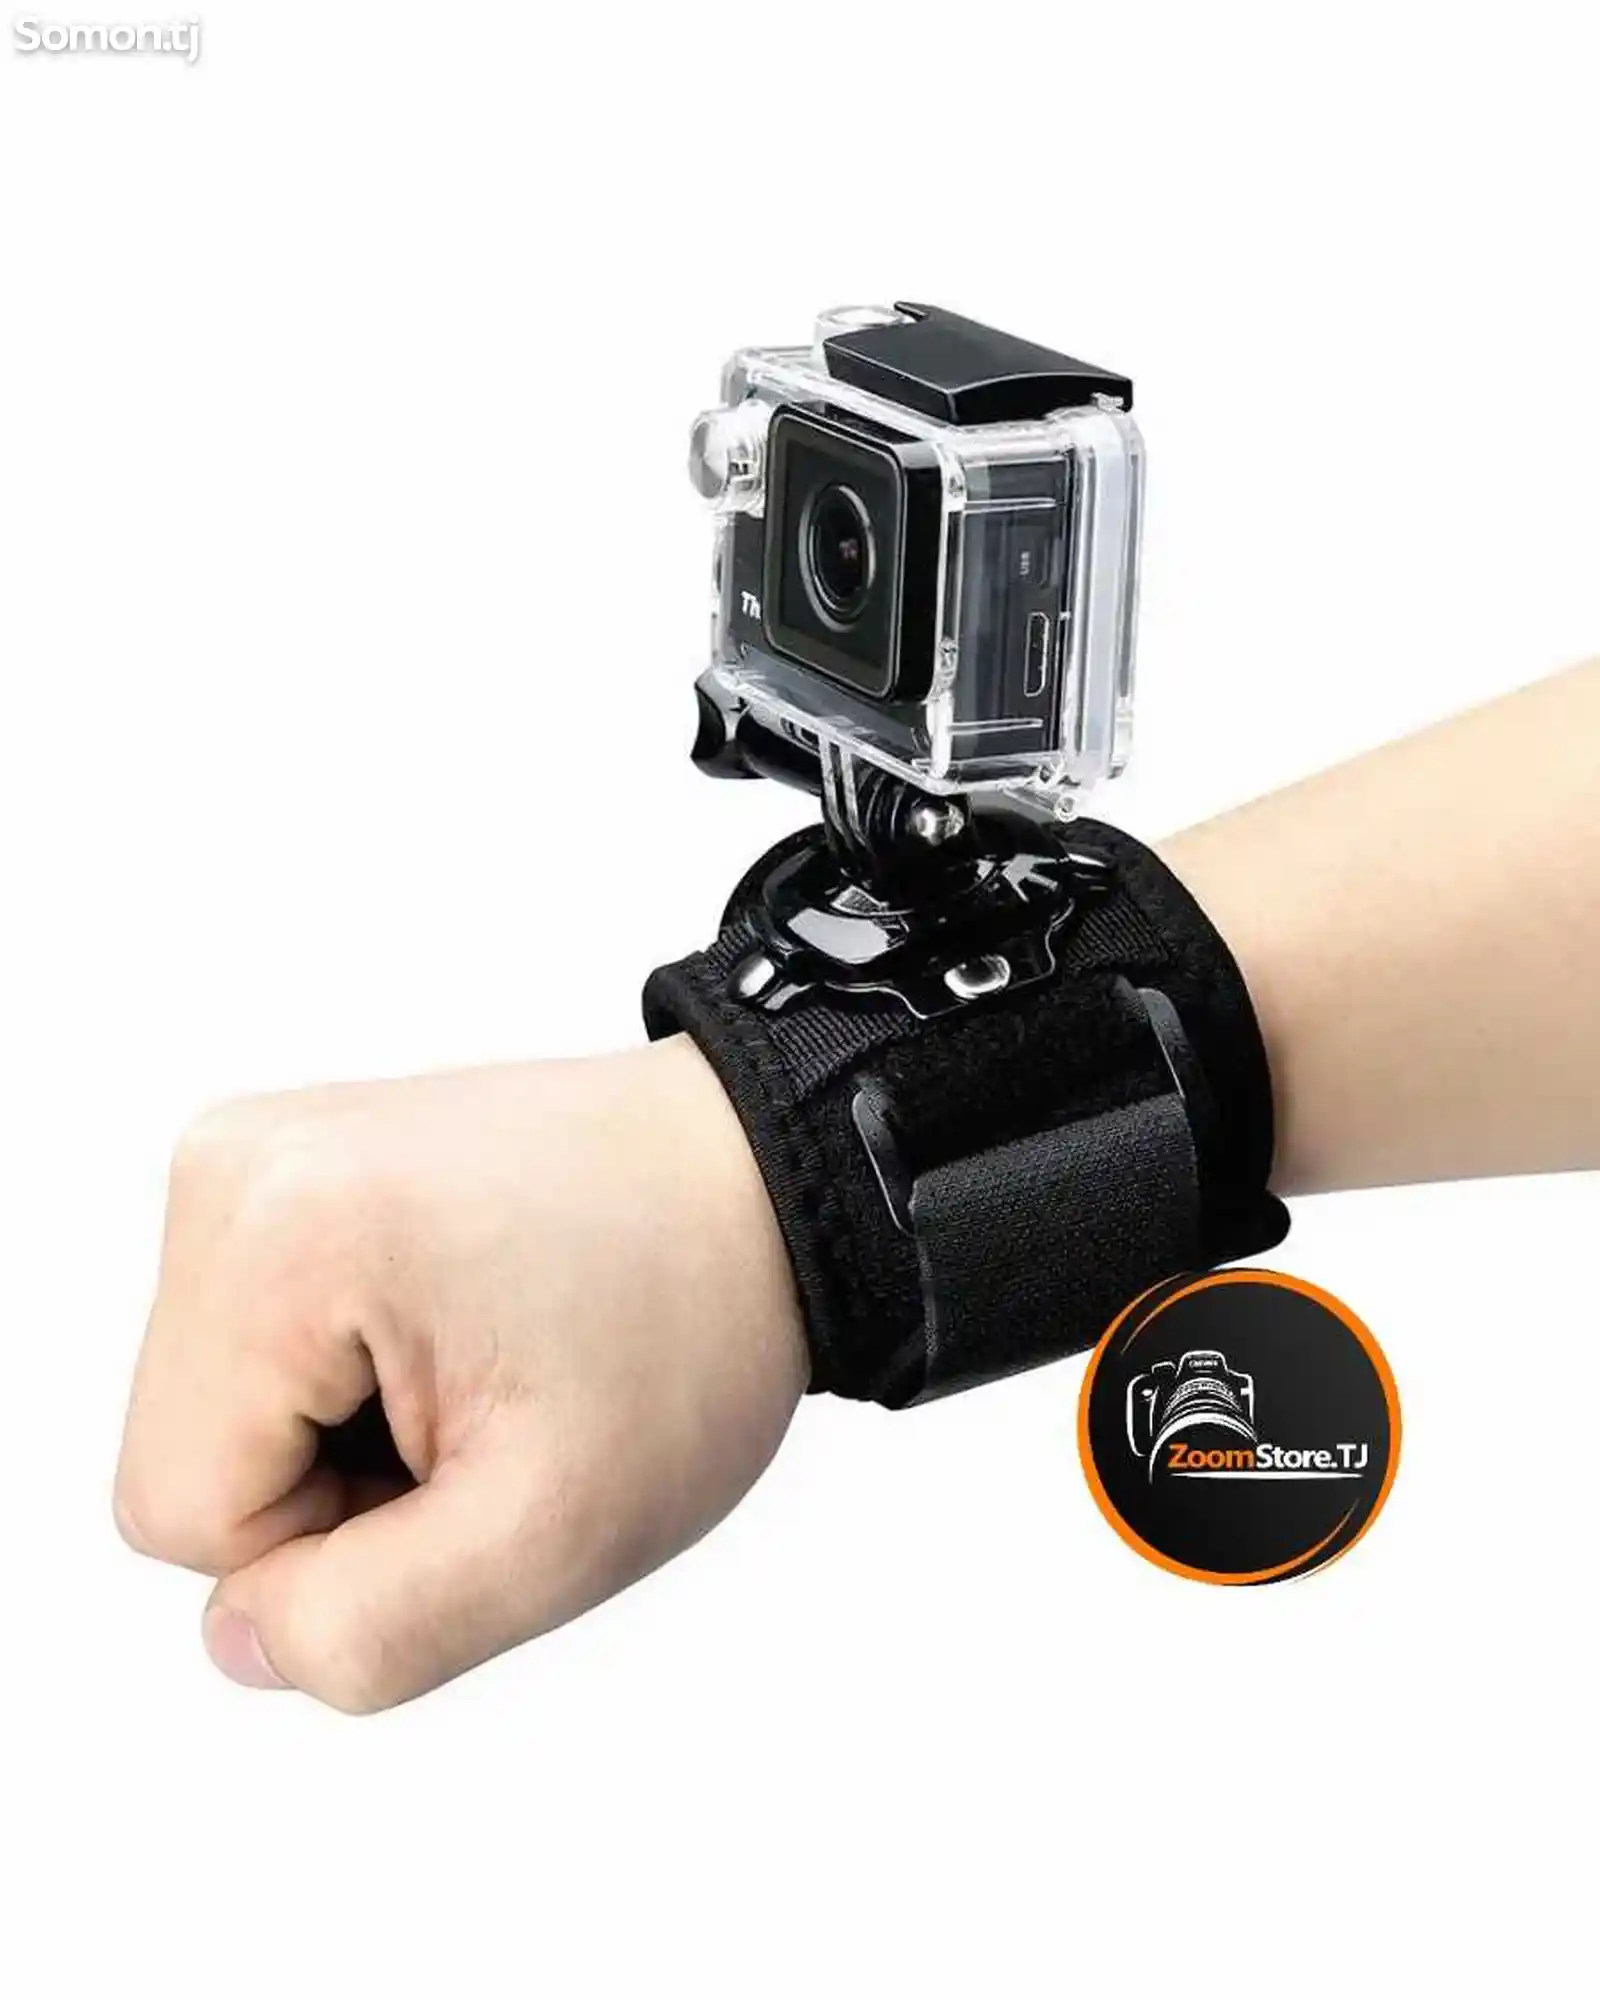 Крепление на руку для экшн камер GoPro, SJCAM и других-3